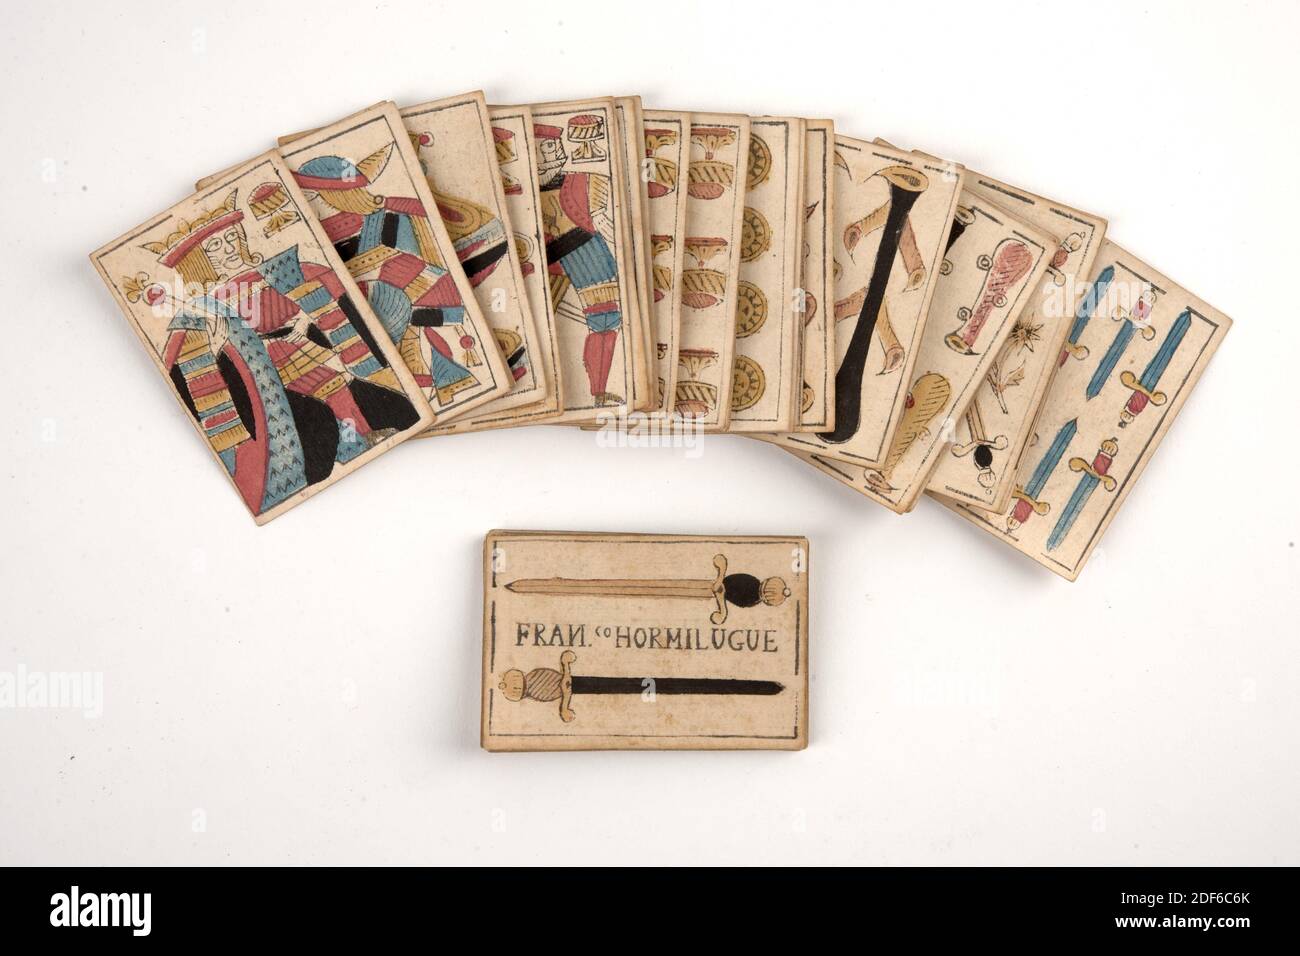 Carte da gioco, 1720, pergamena, carta, inchiostro, stampato, Generale: 6 x  9,2cm (60 x 92mm) carte, Generale: 10.5 x 7 x 1,4cm (105 x 70 x 14mm)  confezione, mazzo di tipo spagnolo